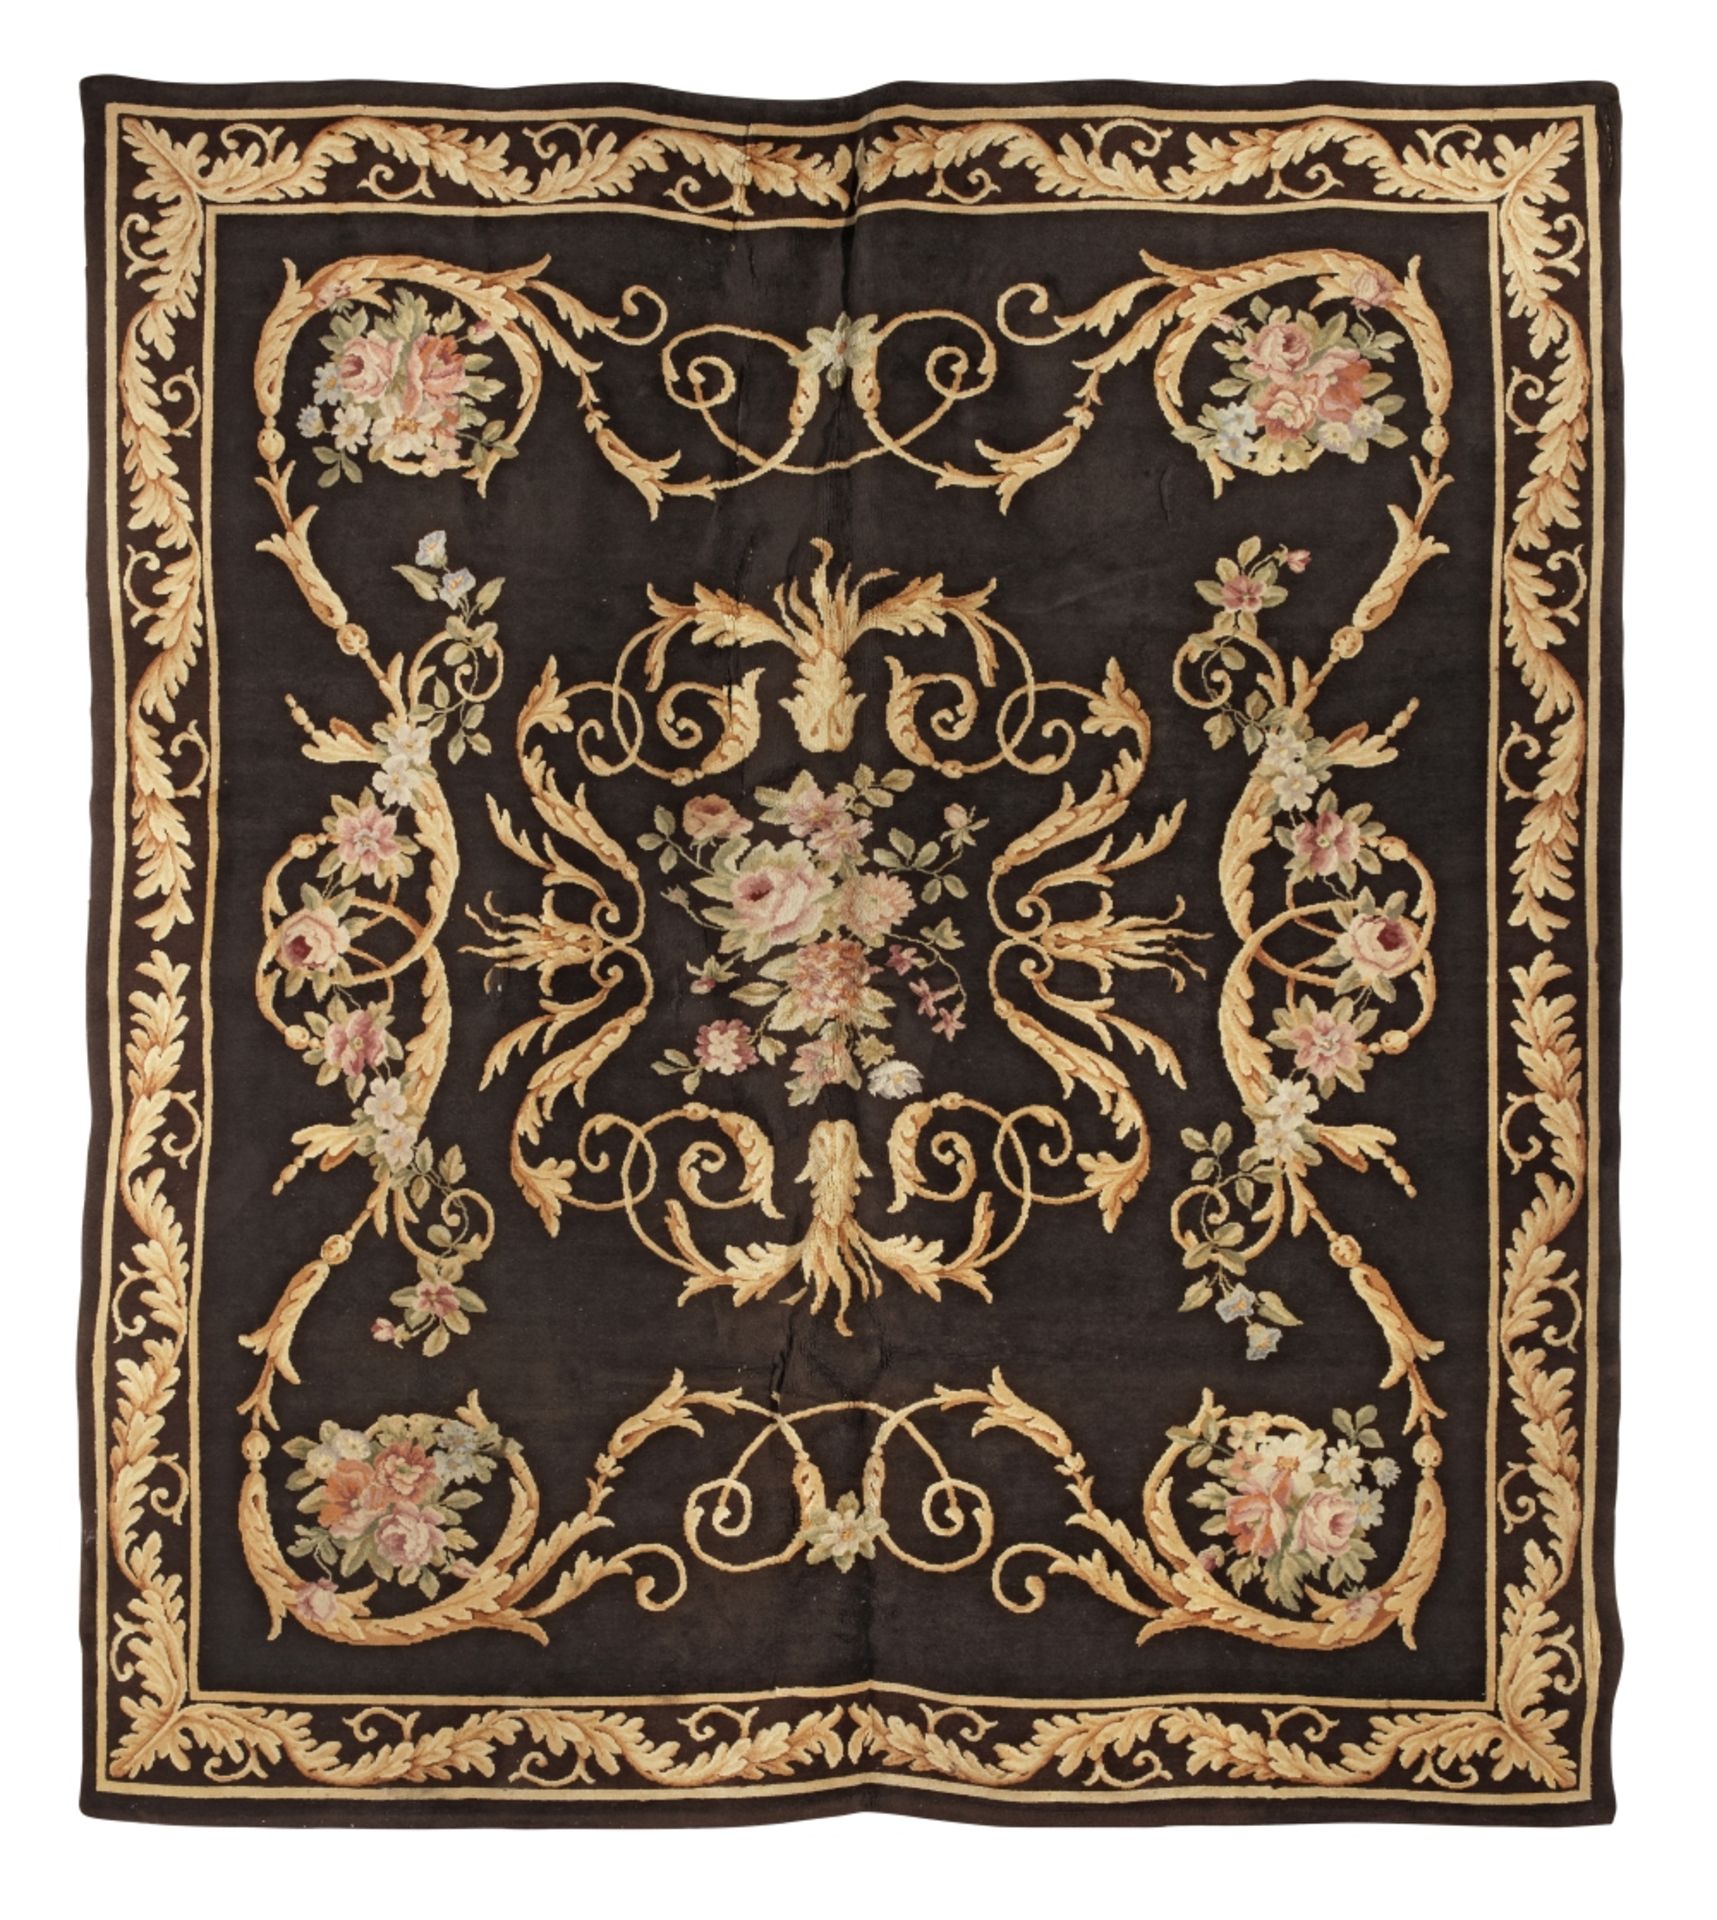 A large Aubusson carpet